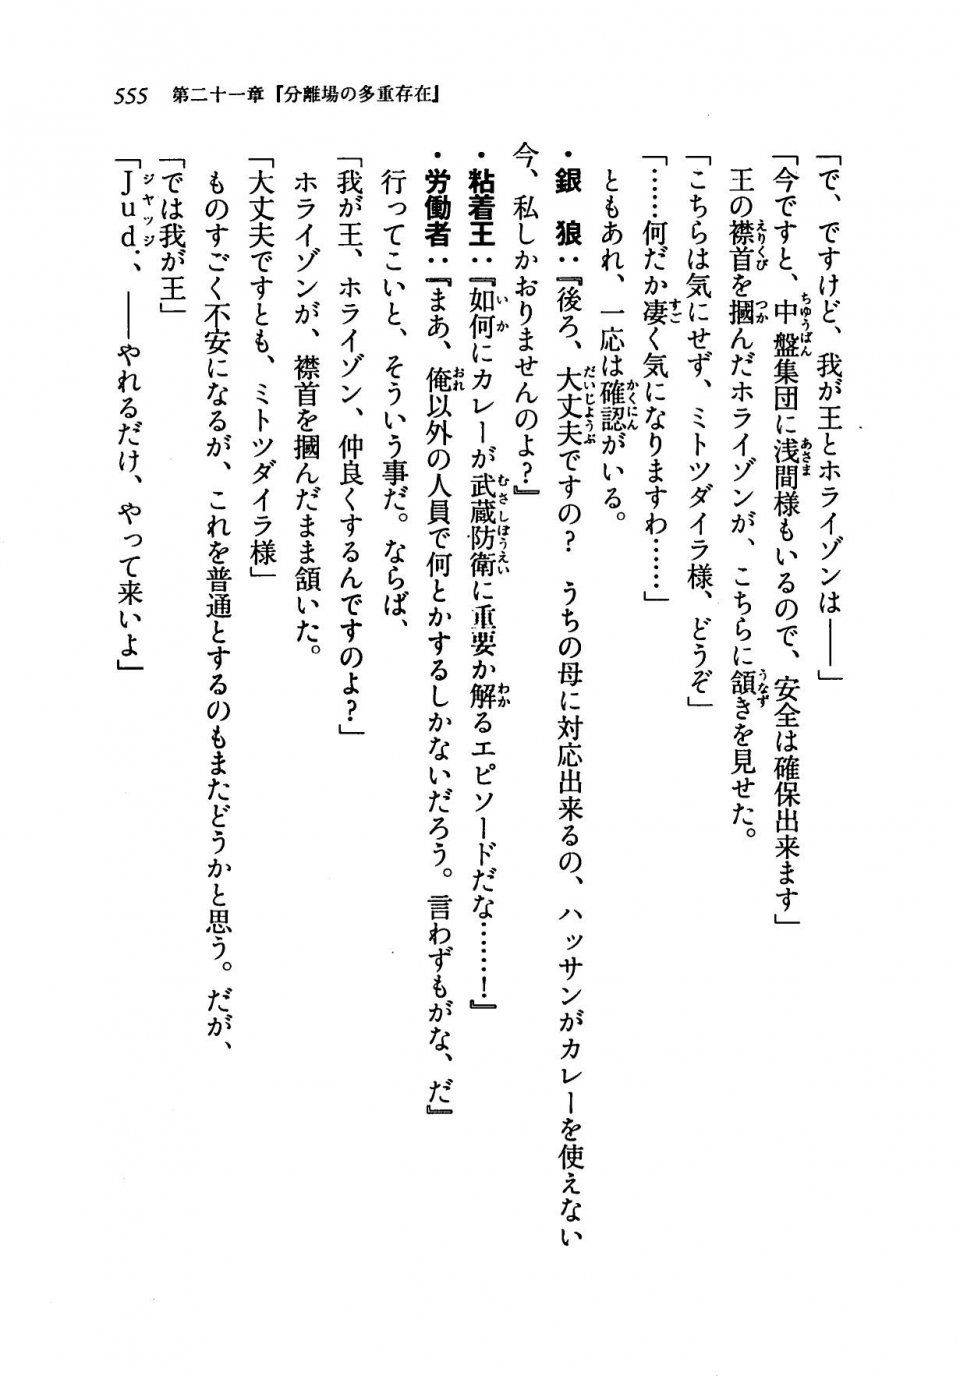 Kyoukai Senjou no Horizon LN Vol 19(8A) - Photo #555